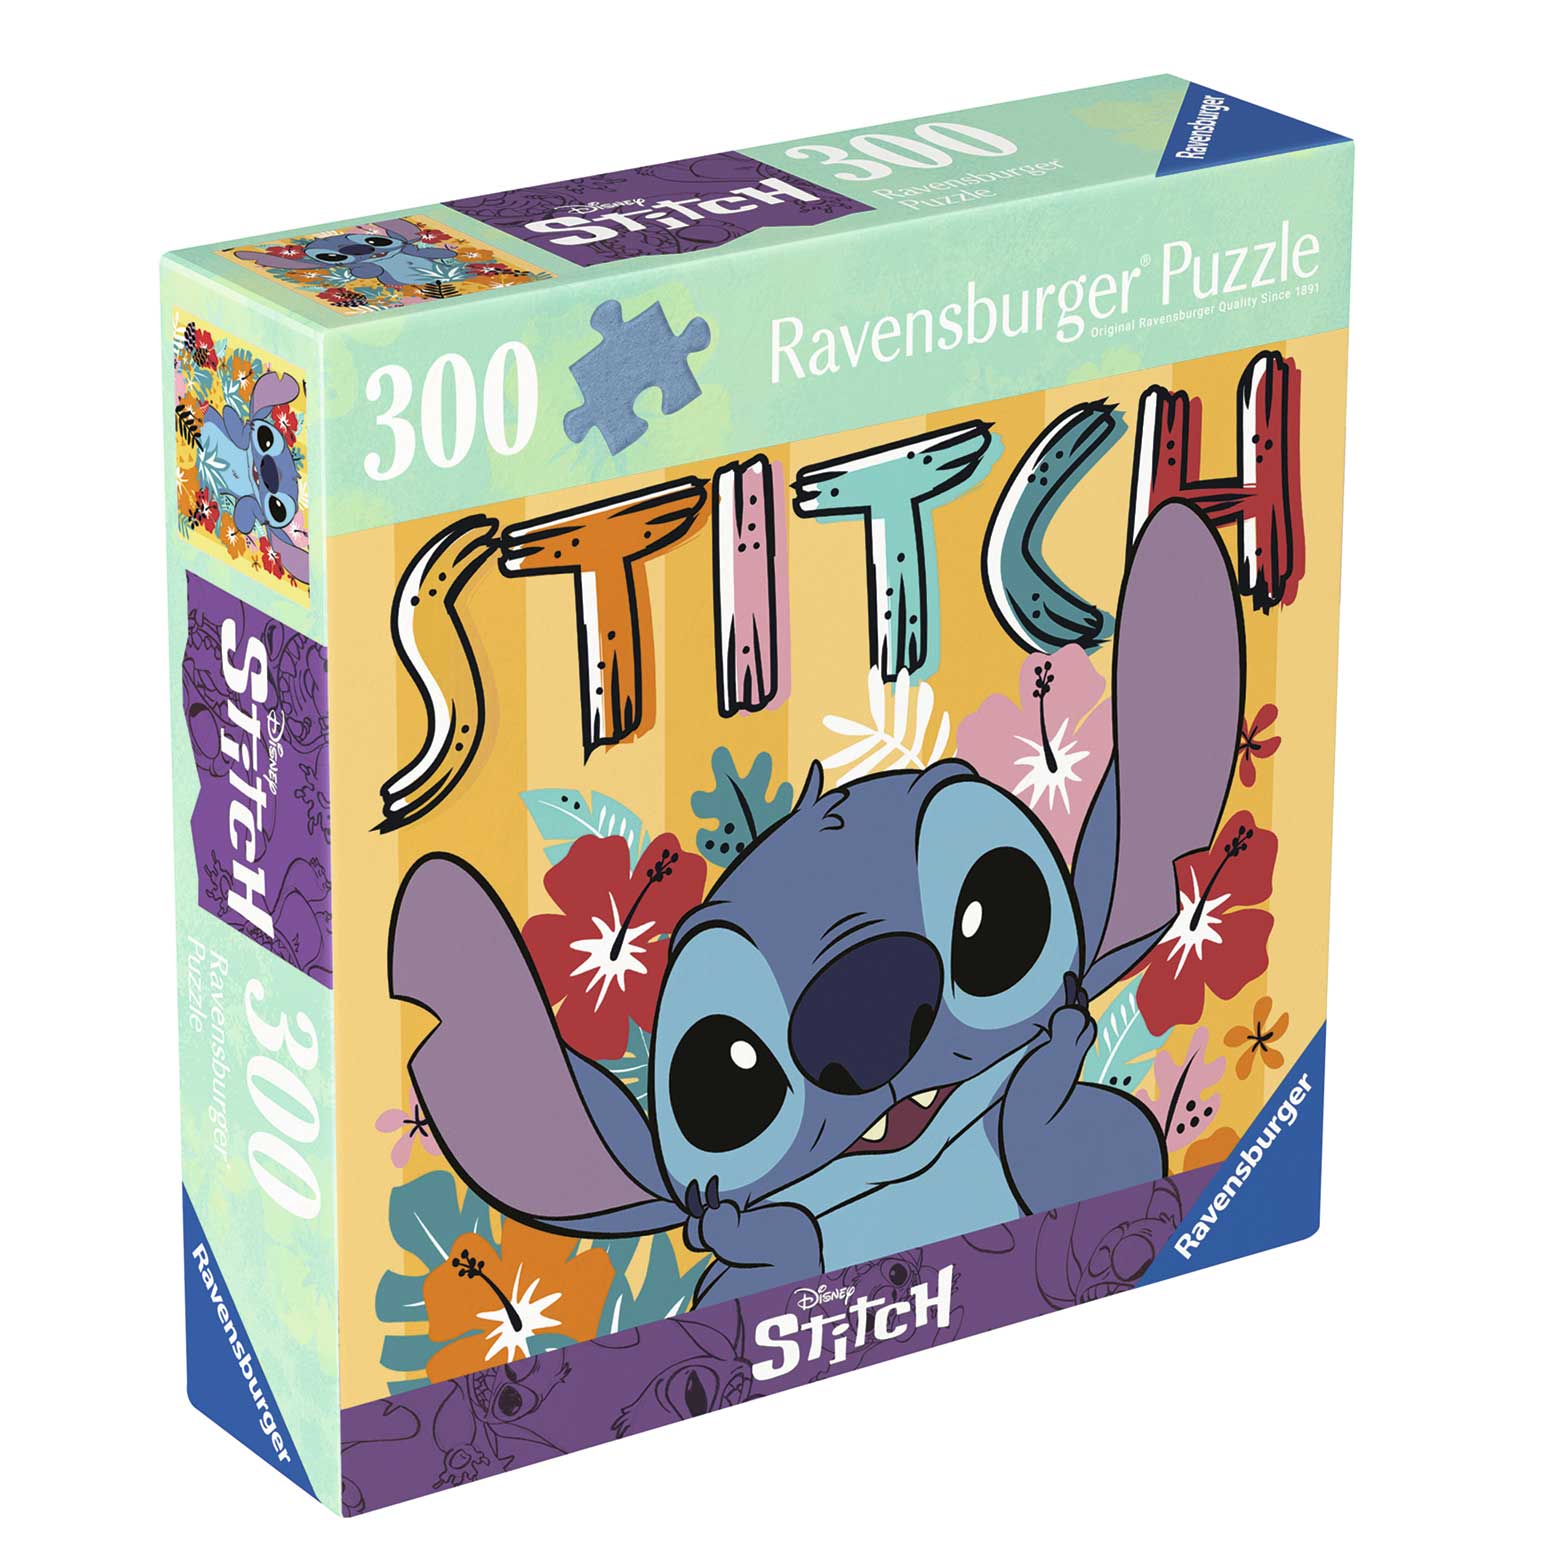 Comprar Puzzle Ravensburger Stitch de 300 Piezas - Ravensburger-133994